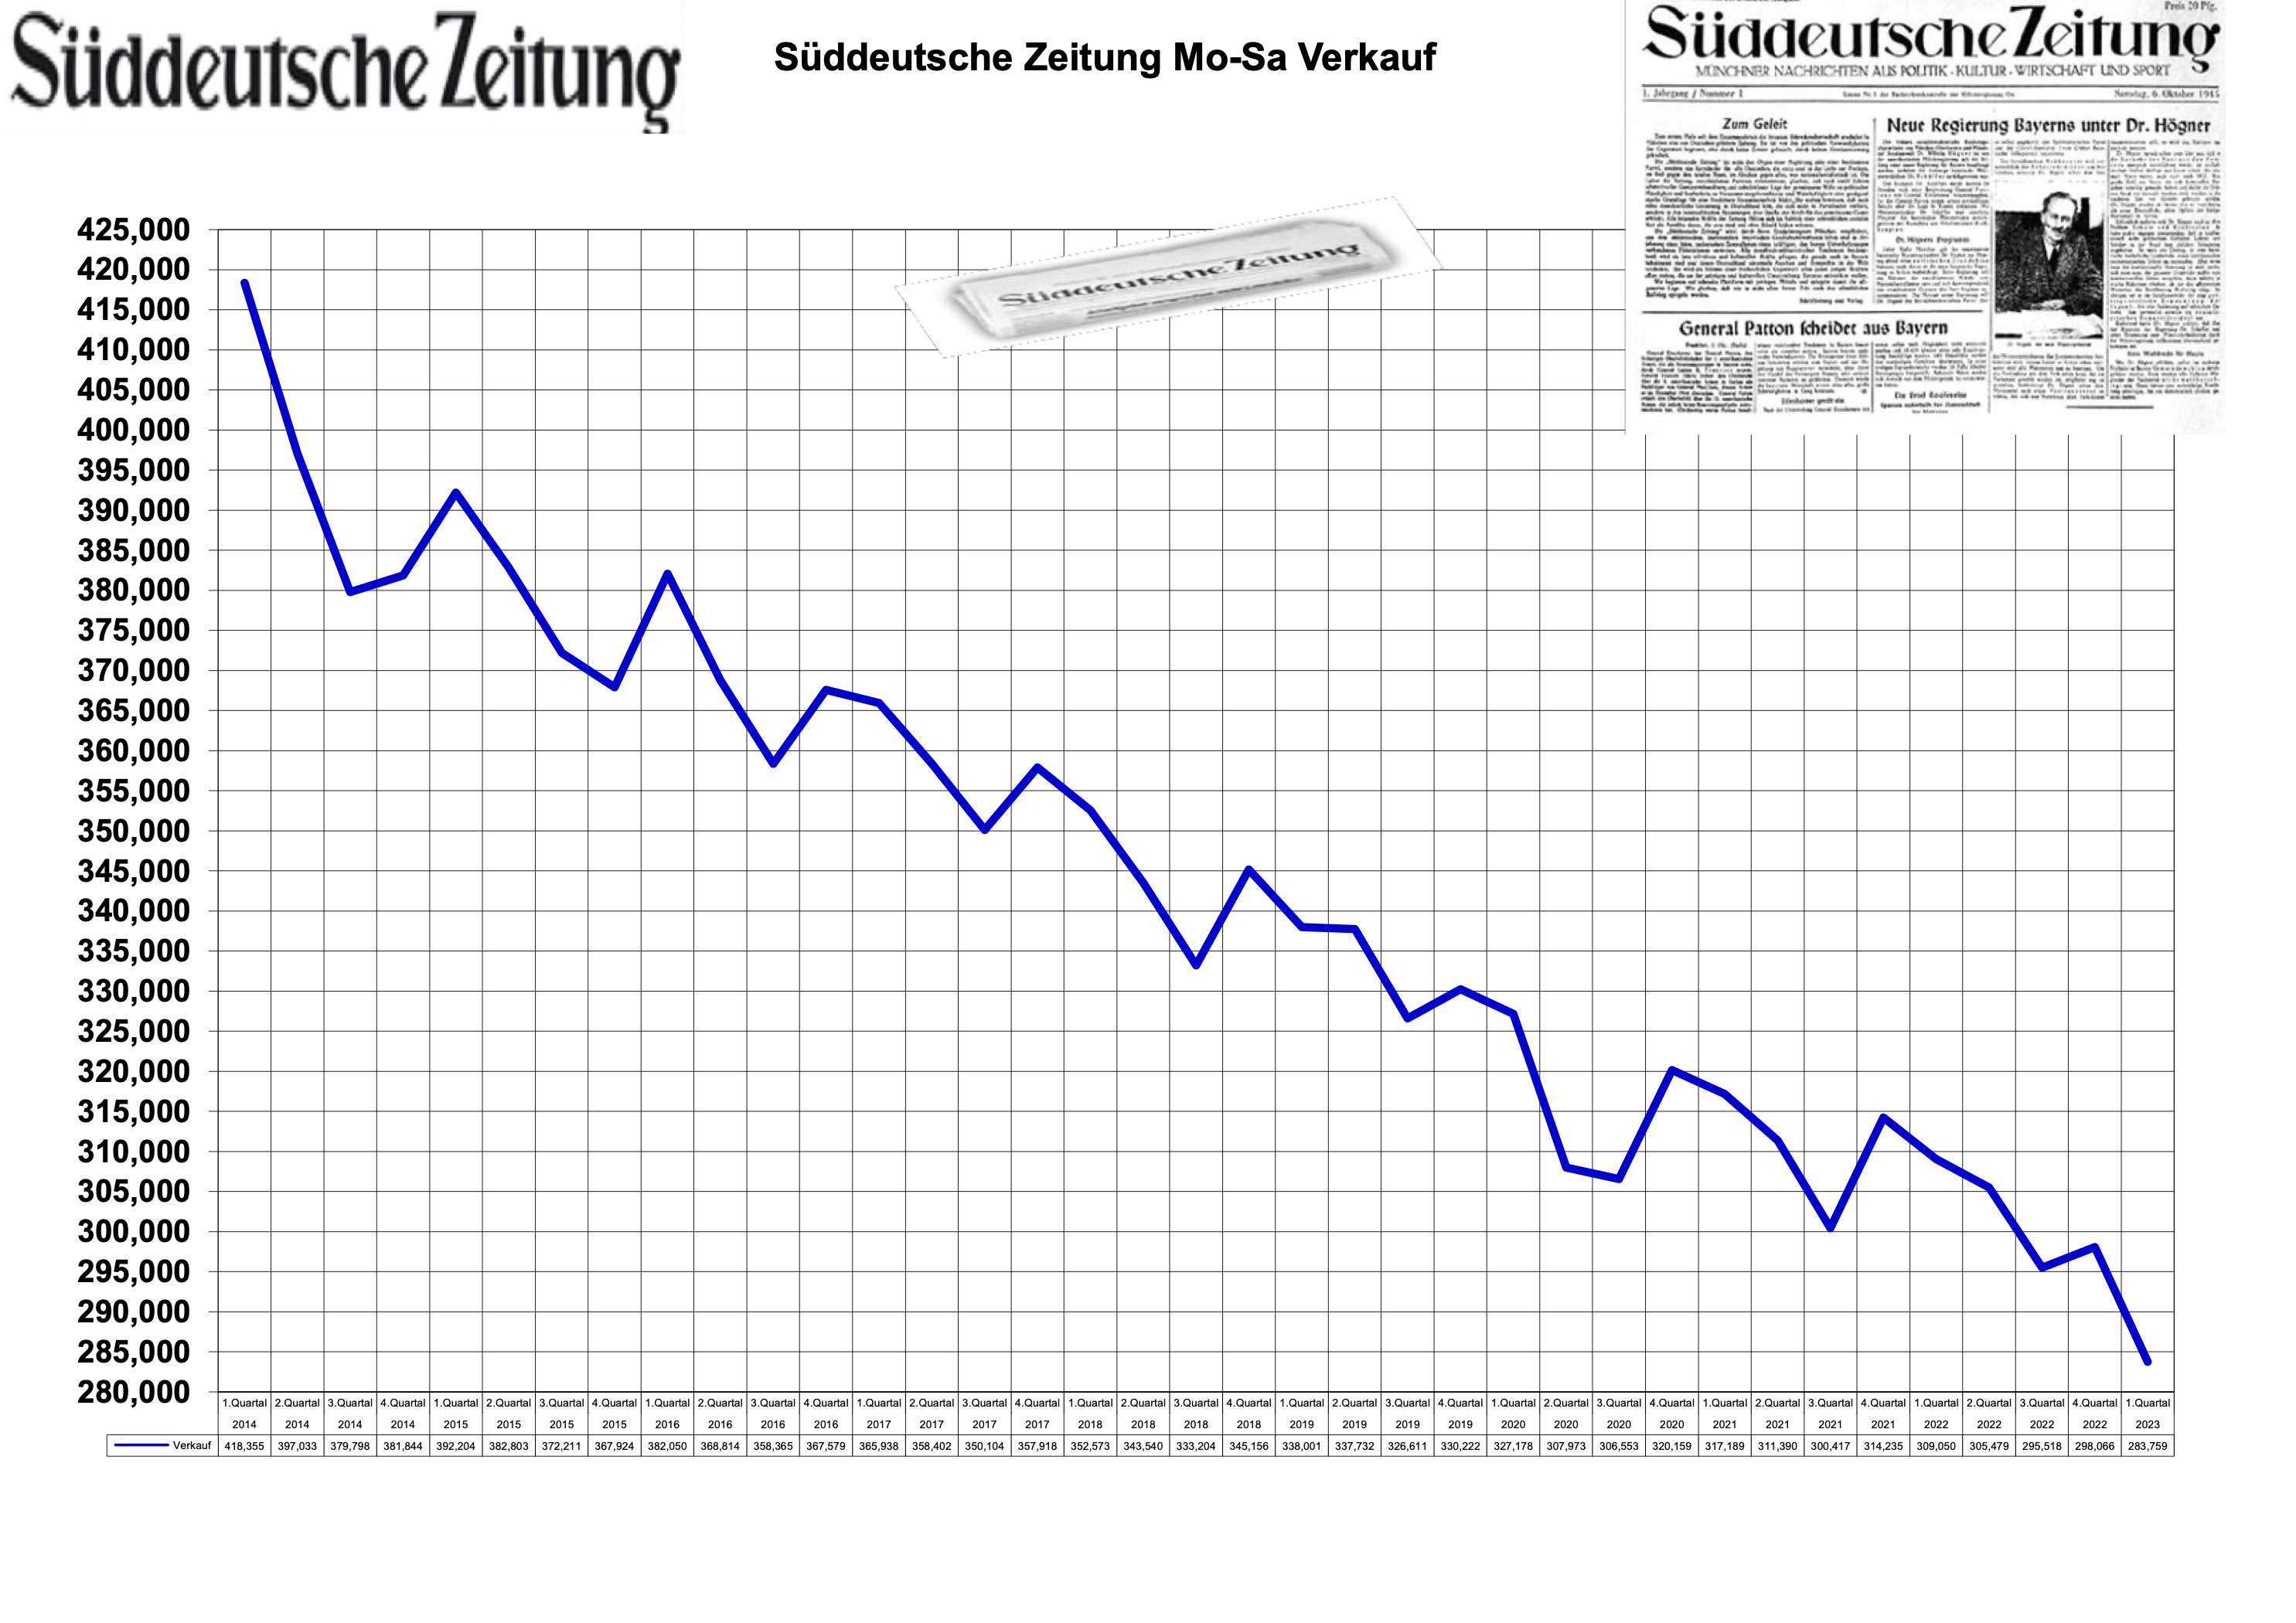 Sueddeutsche-Zeitung-verkauf.png